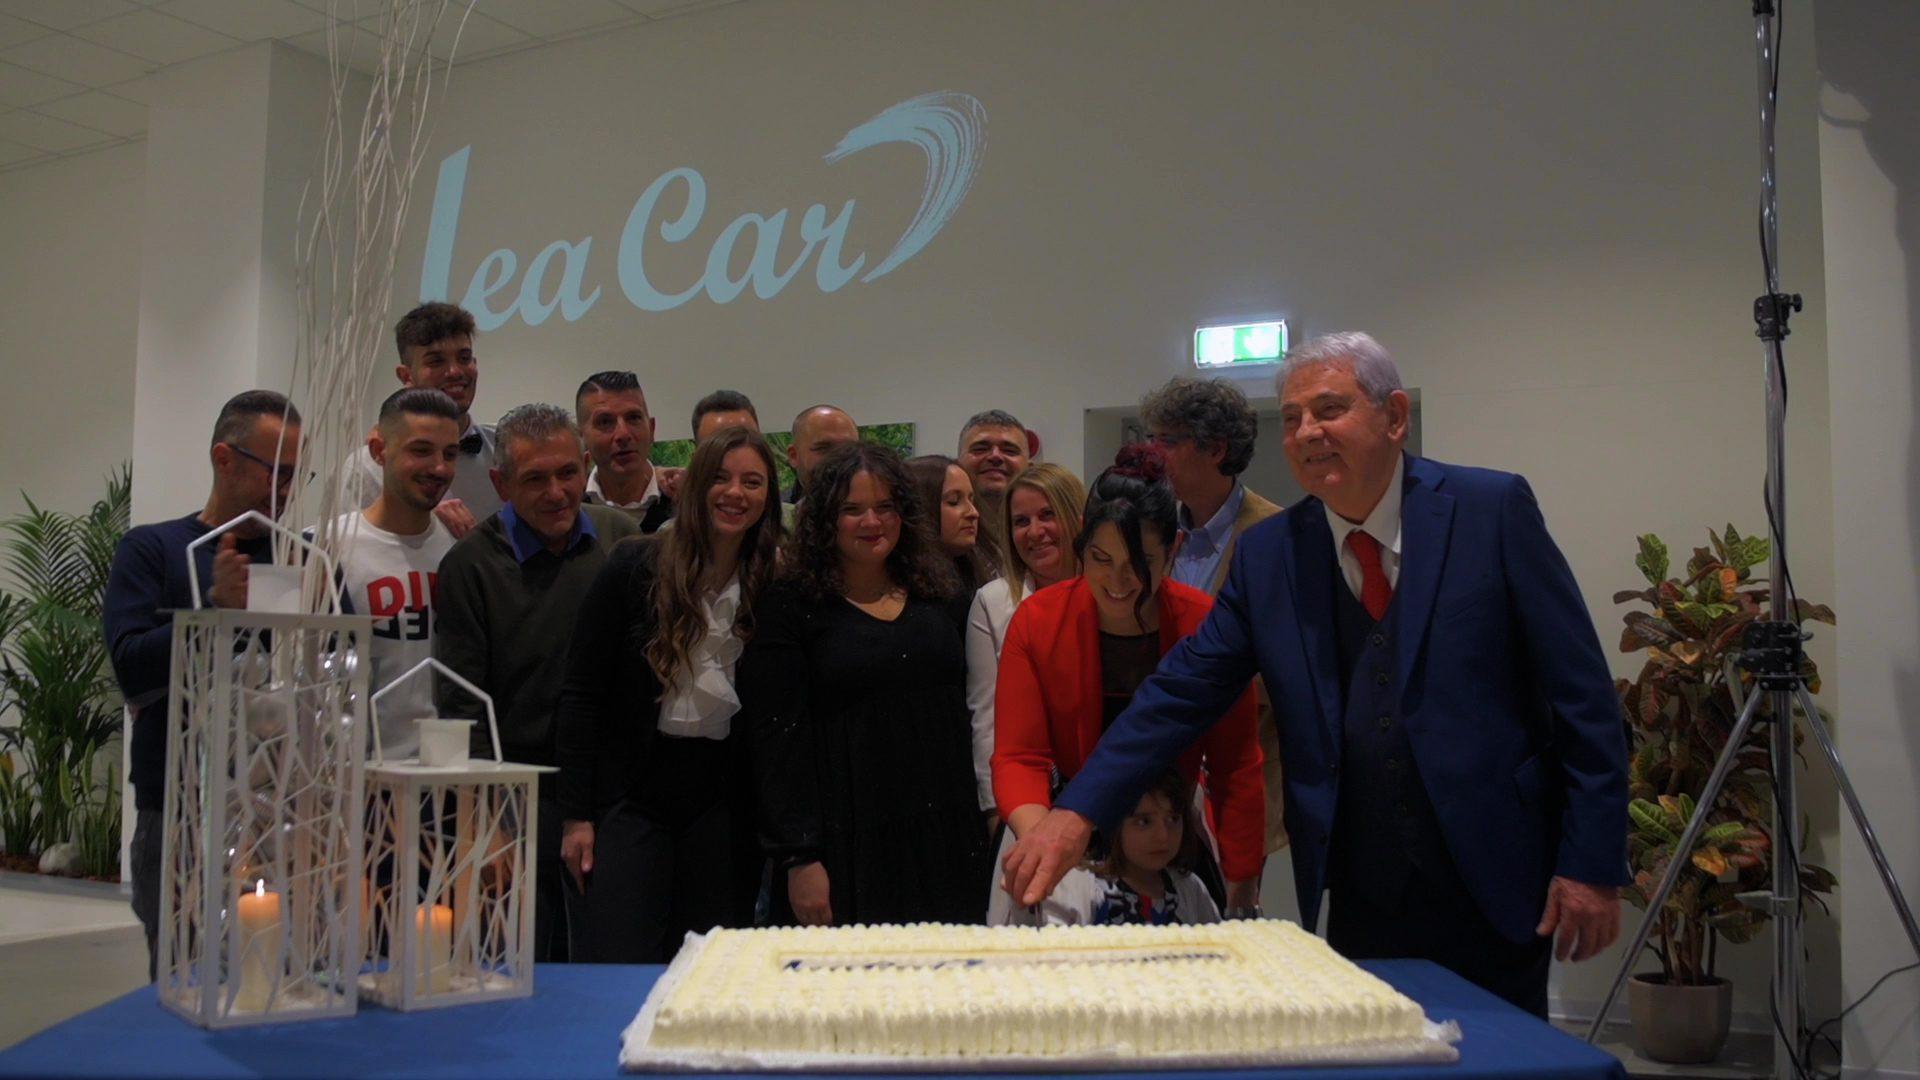 Esclusiva, elegante e ricercata: Lea Car conquista tutti presentando la nuova casa di Hyundai a Solaro